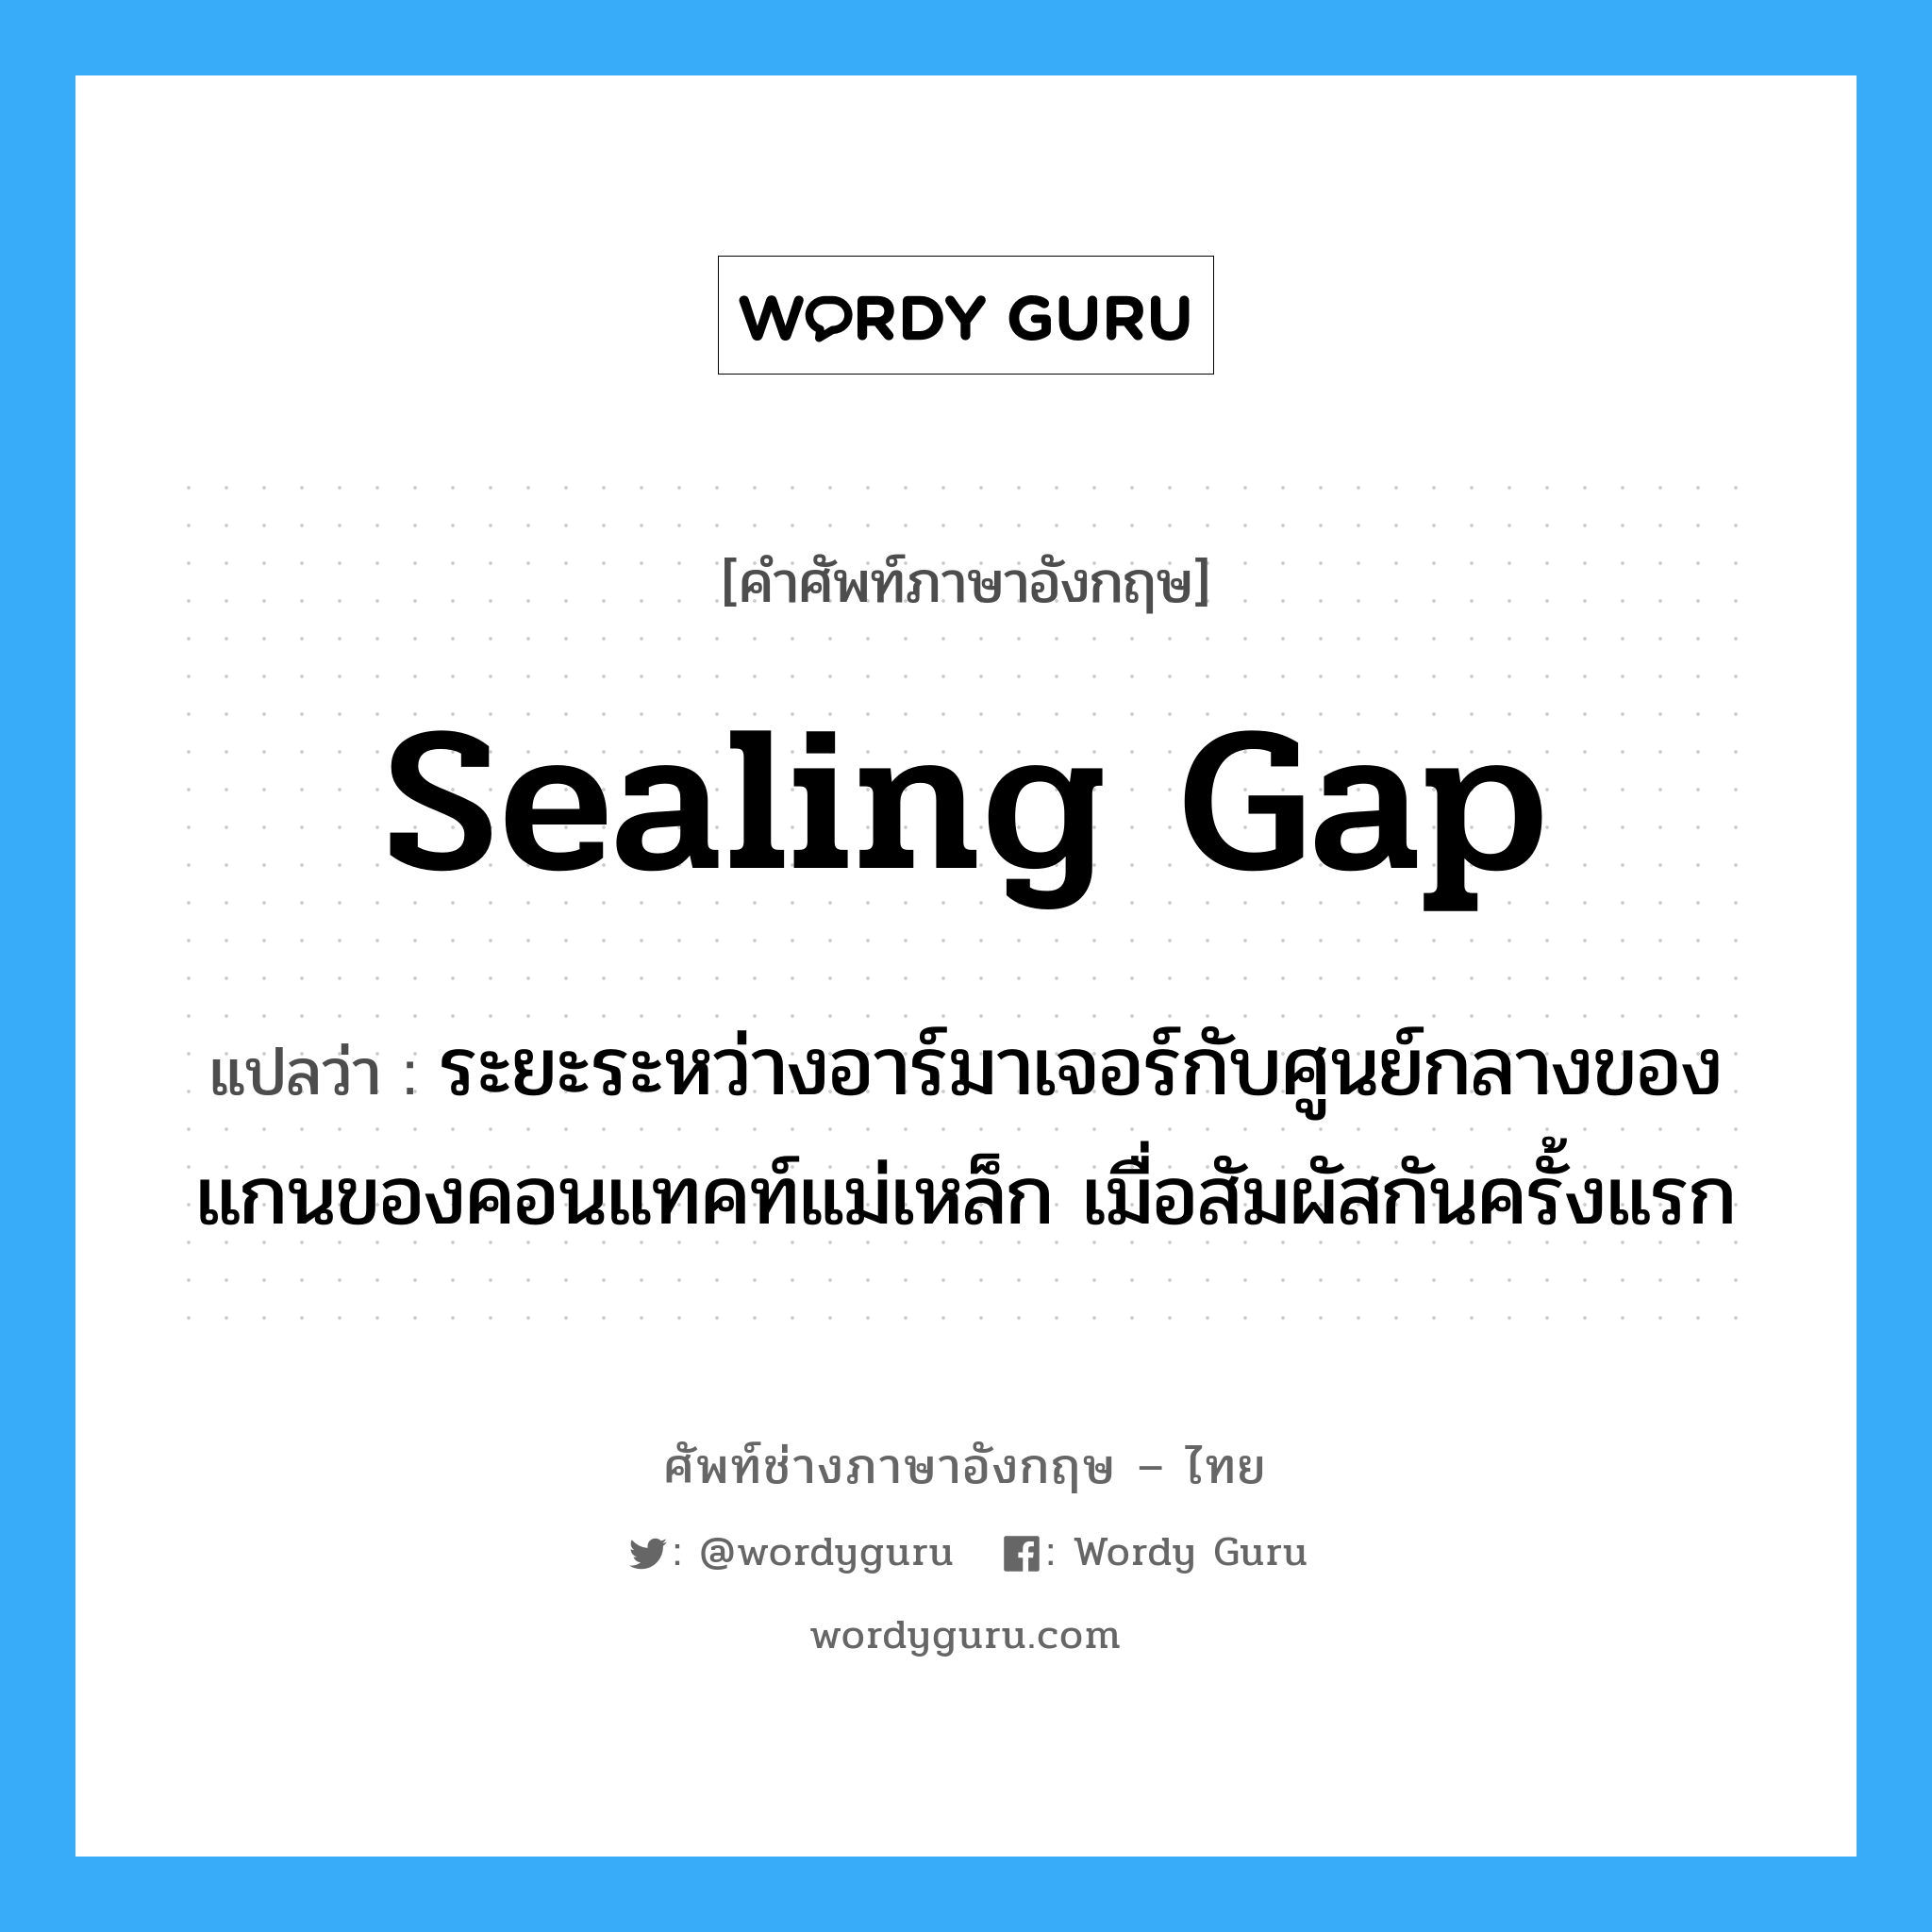 sealing gap แปลว่า?, คำศัพท์ช่างภาษาอังกฤษ - ไทย sealing gap คำศัพท์ภาษาอังกฤษ sealing gap แปลว่า ระยะระหว่างอาร์มาเจอร์กับศูนย์กลางของแกนของคอนแทคท์แม่เหล็ก เมื่อสัมผัสกันครั้งแรก